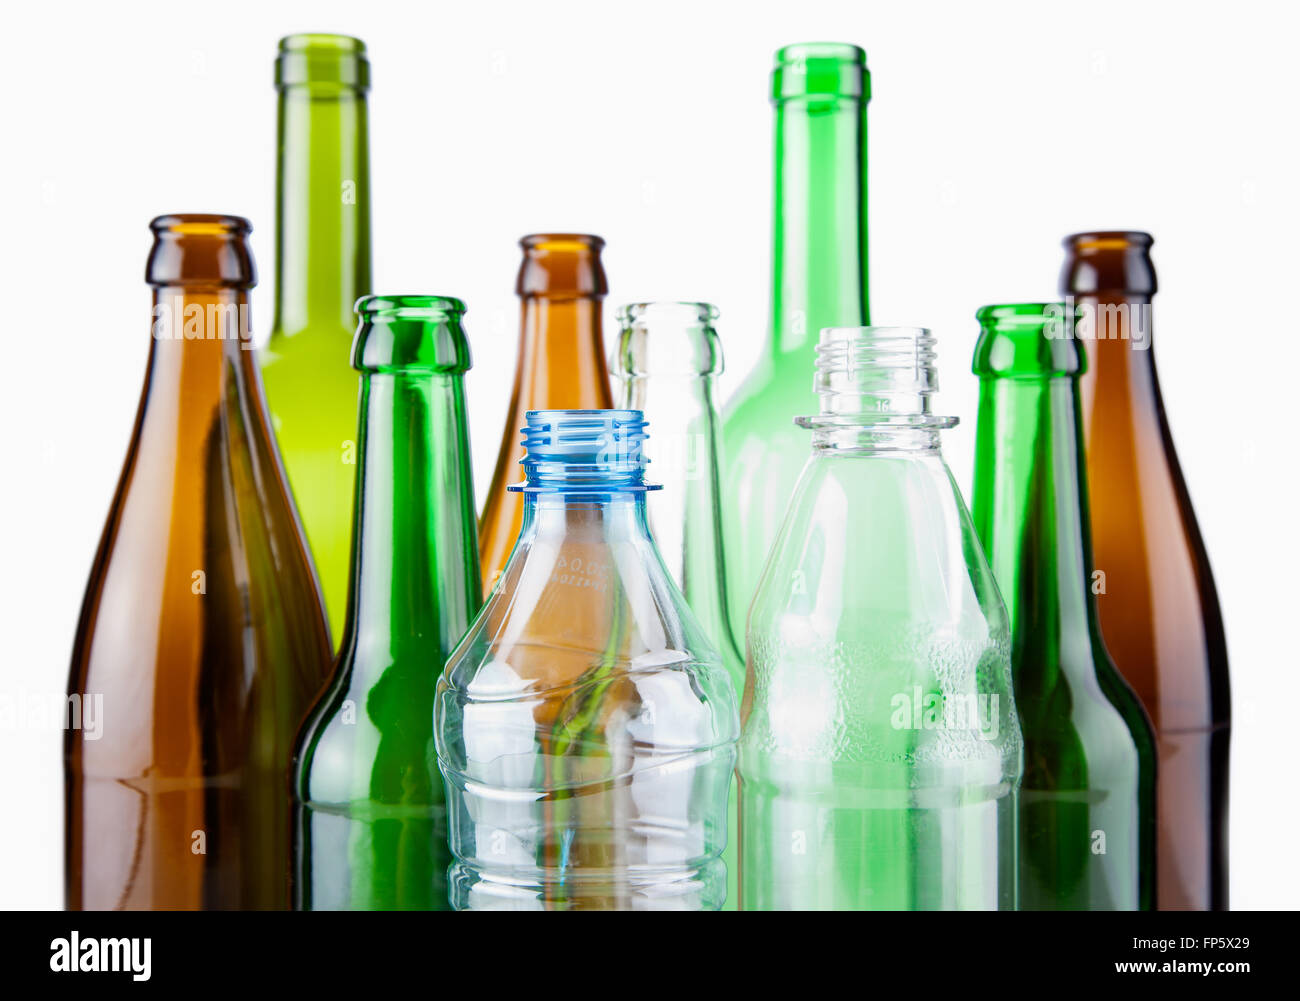 Leere Flaschen Nahaufnahme isoliert auf weißem Hintergrund Stockfotografie  - Alamy